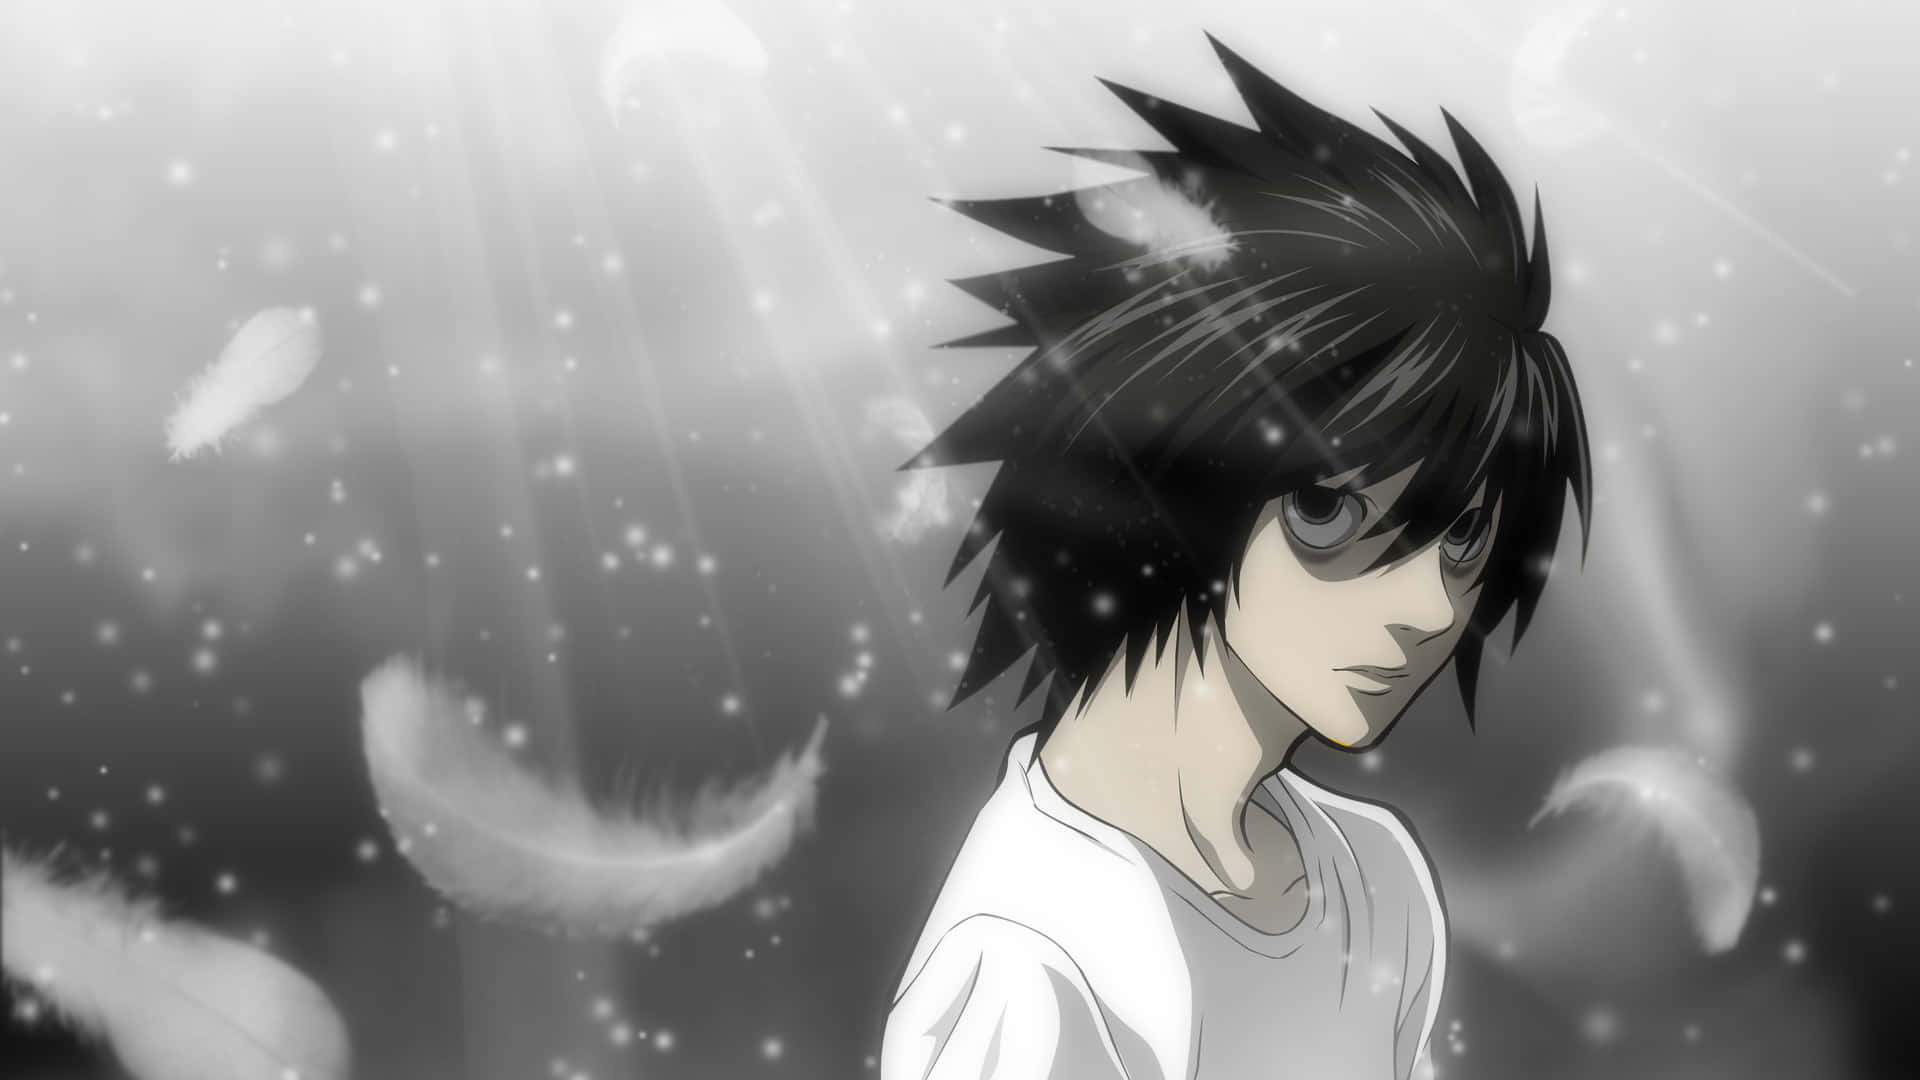 Lightyagami Es El Protagonista De La Serie De Manga Y Anime, Death Note.